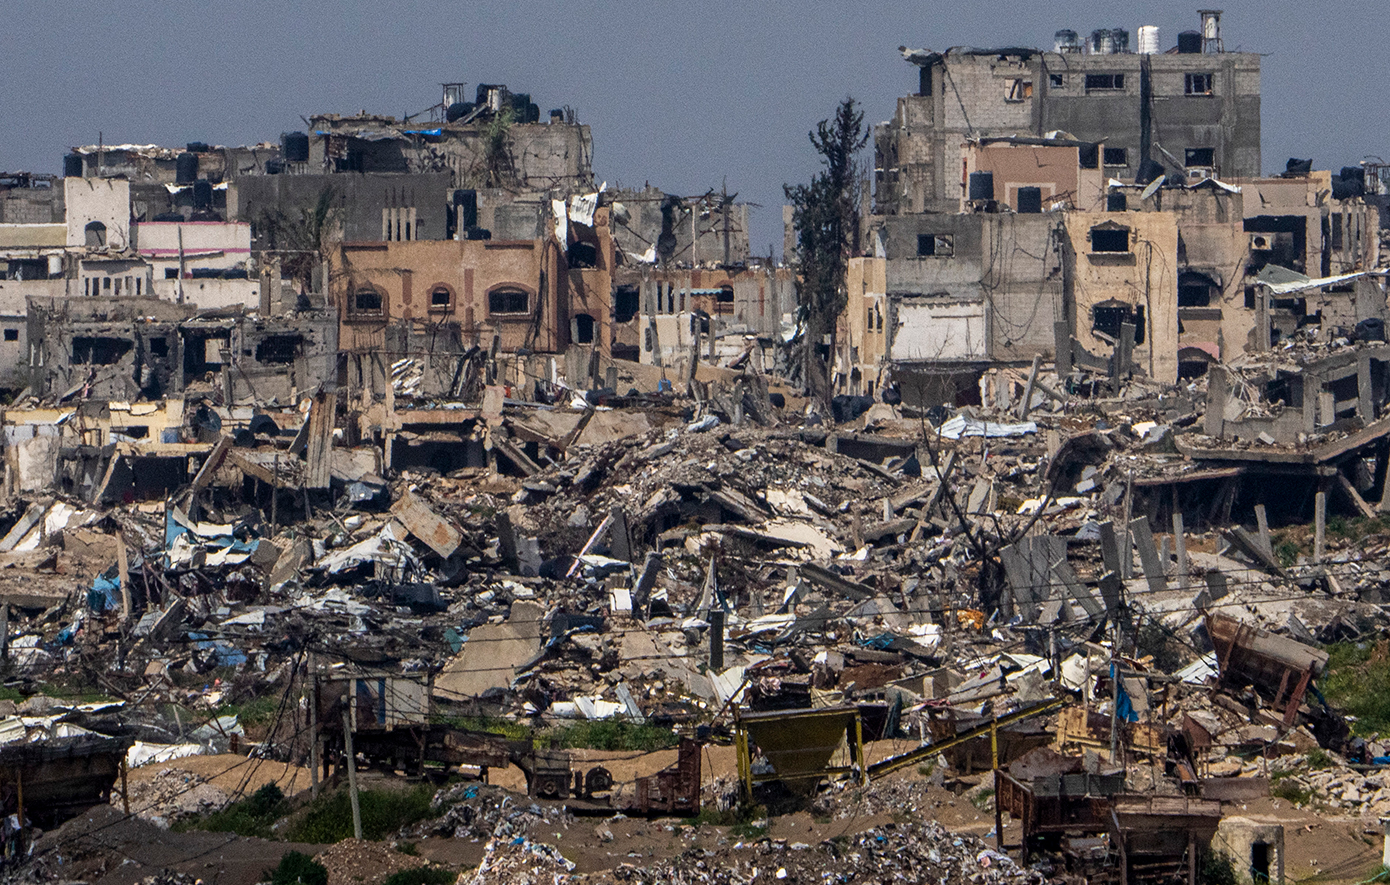 Ασταμάτητοι οι βομβαρδισμοί στη Λωρίδα της Γάζας – Oι ΗΠΑ απειλούν να φρενάρουν τη στρατιωτική βοήθεια στο Ισραήλ αν μπει στη Ράφα